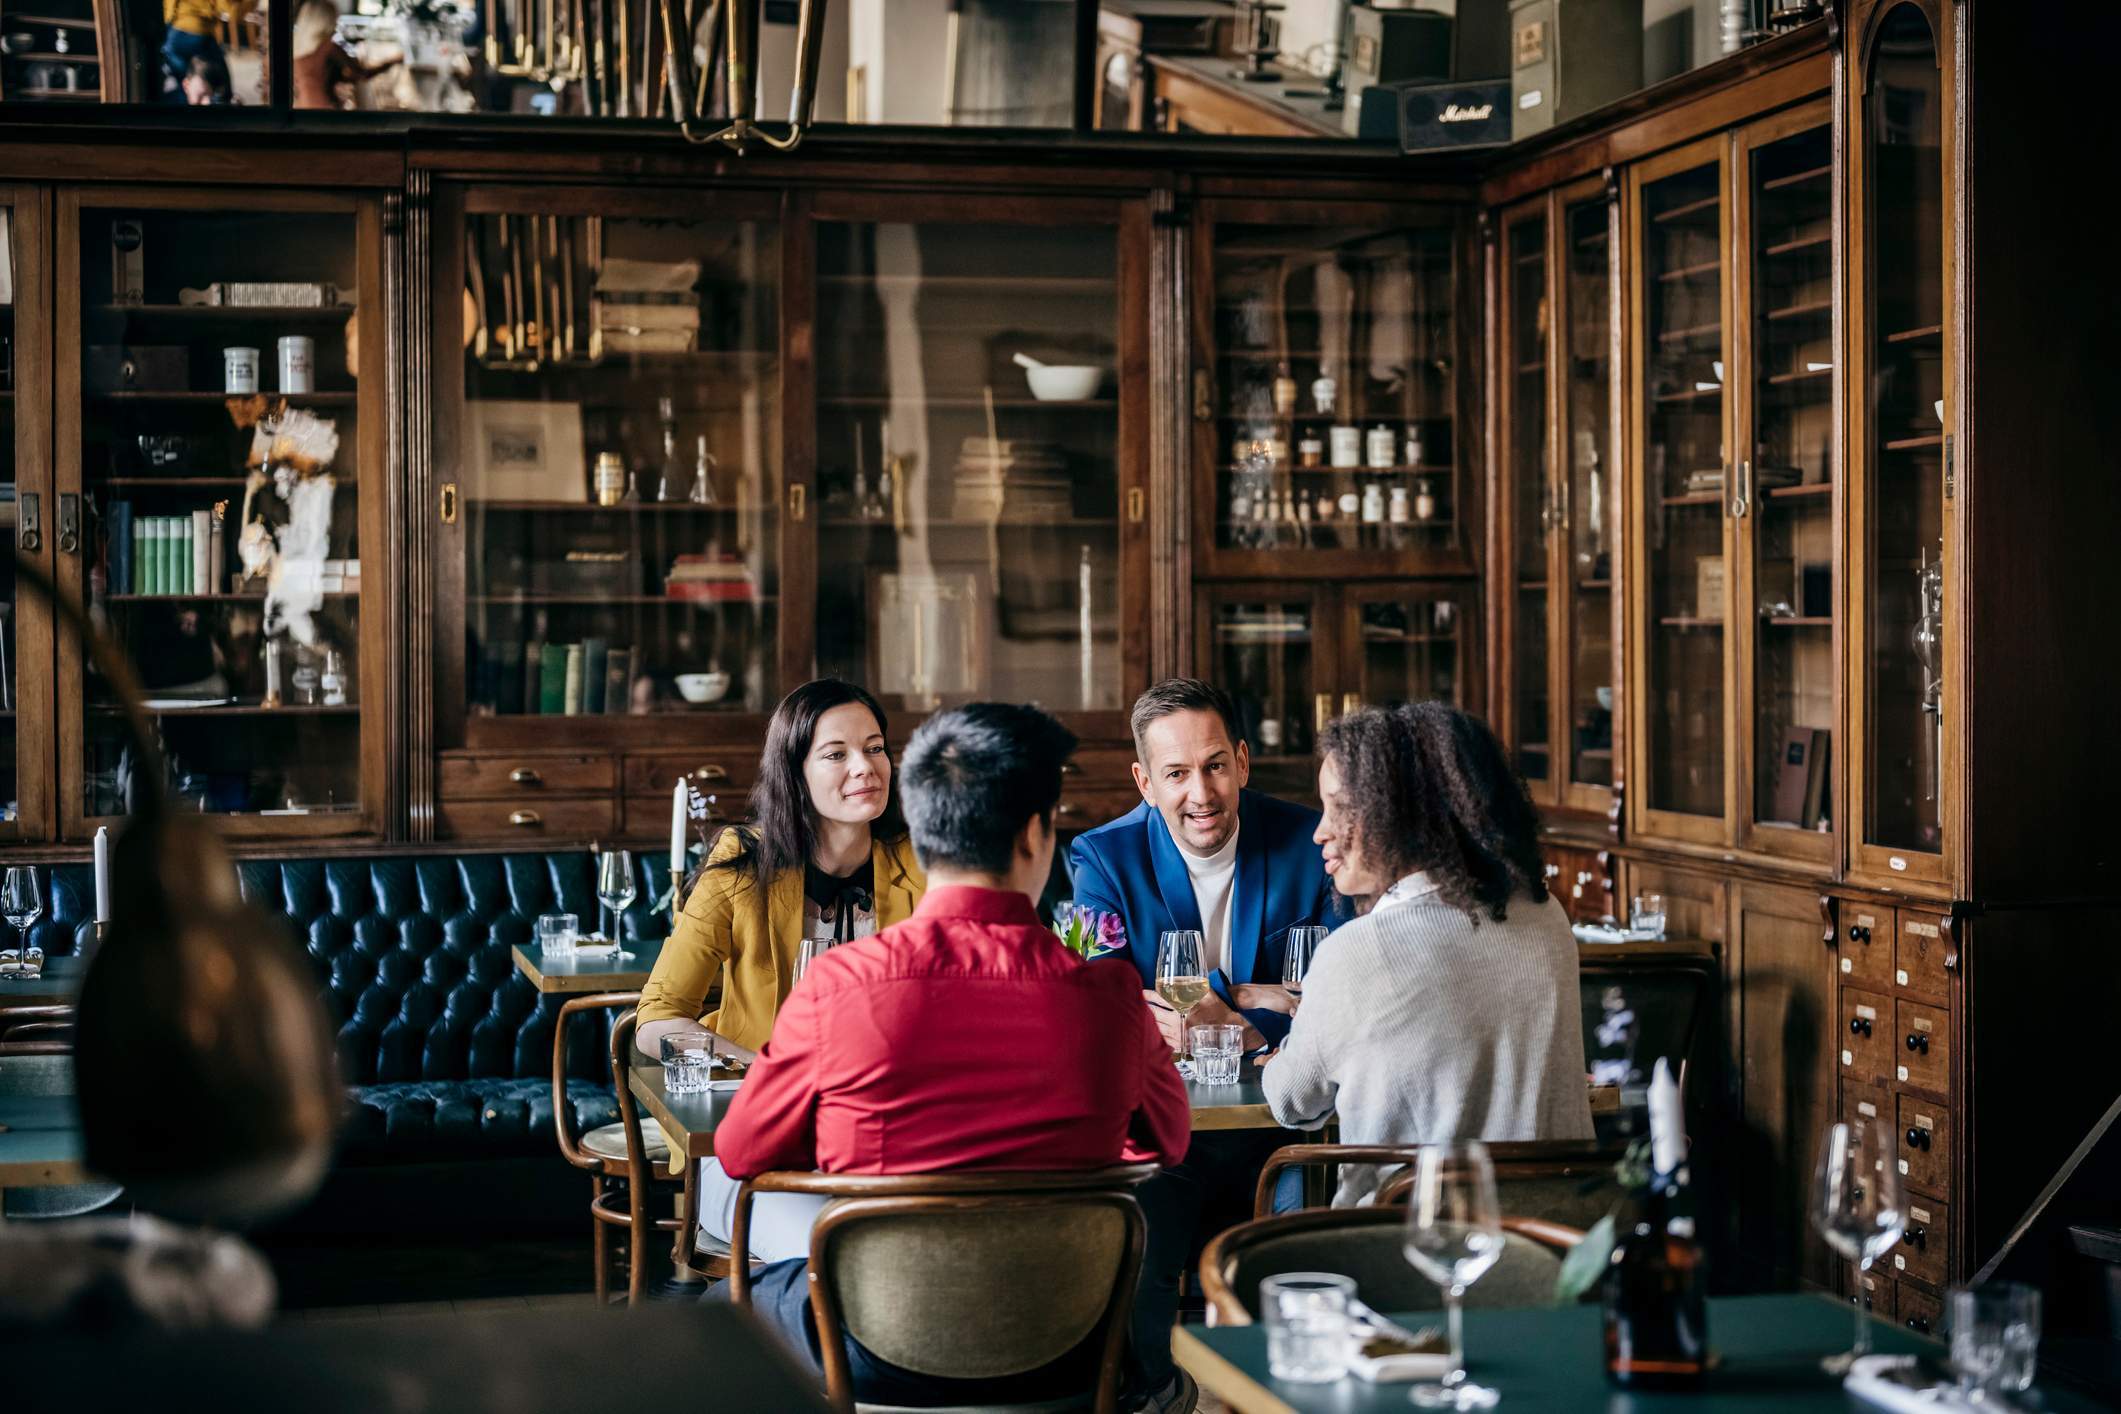 Die Abbildung zeigt vier Gäste, die gemeinsam an einem Tisch sitzen. Das Restaurant ist im Stil eines altmodischen Büros eingerichtet. Mit Leder überzogene Sitzbänke und Bücherregale sind in die Wände eingebaut. Die Gäste tragen Kleidung in unterschiedlichen Farben. Sie unterhalten sich miteinander.